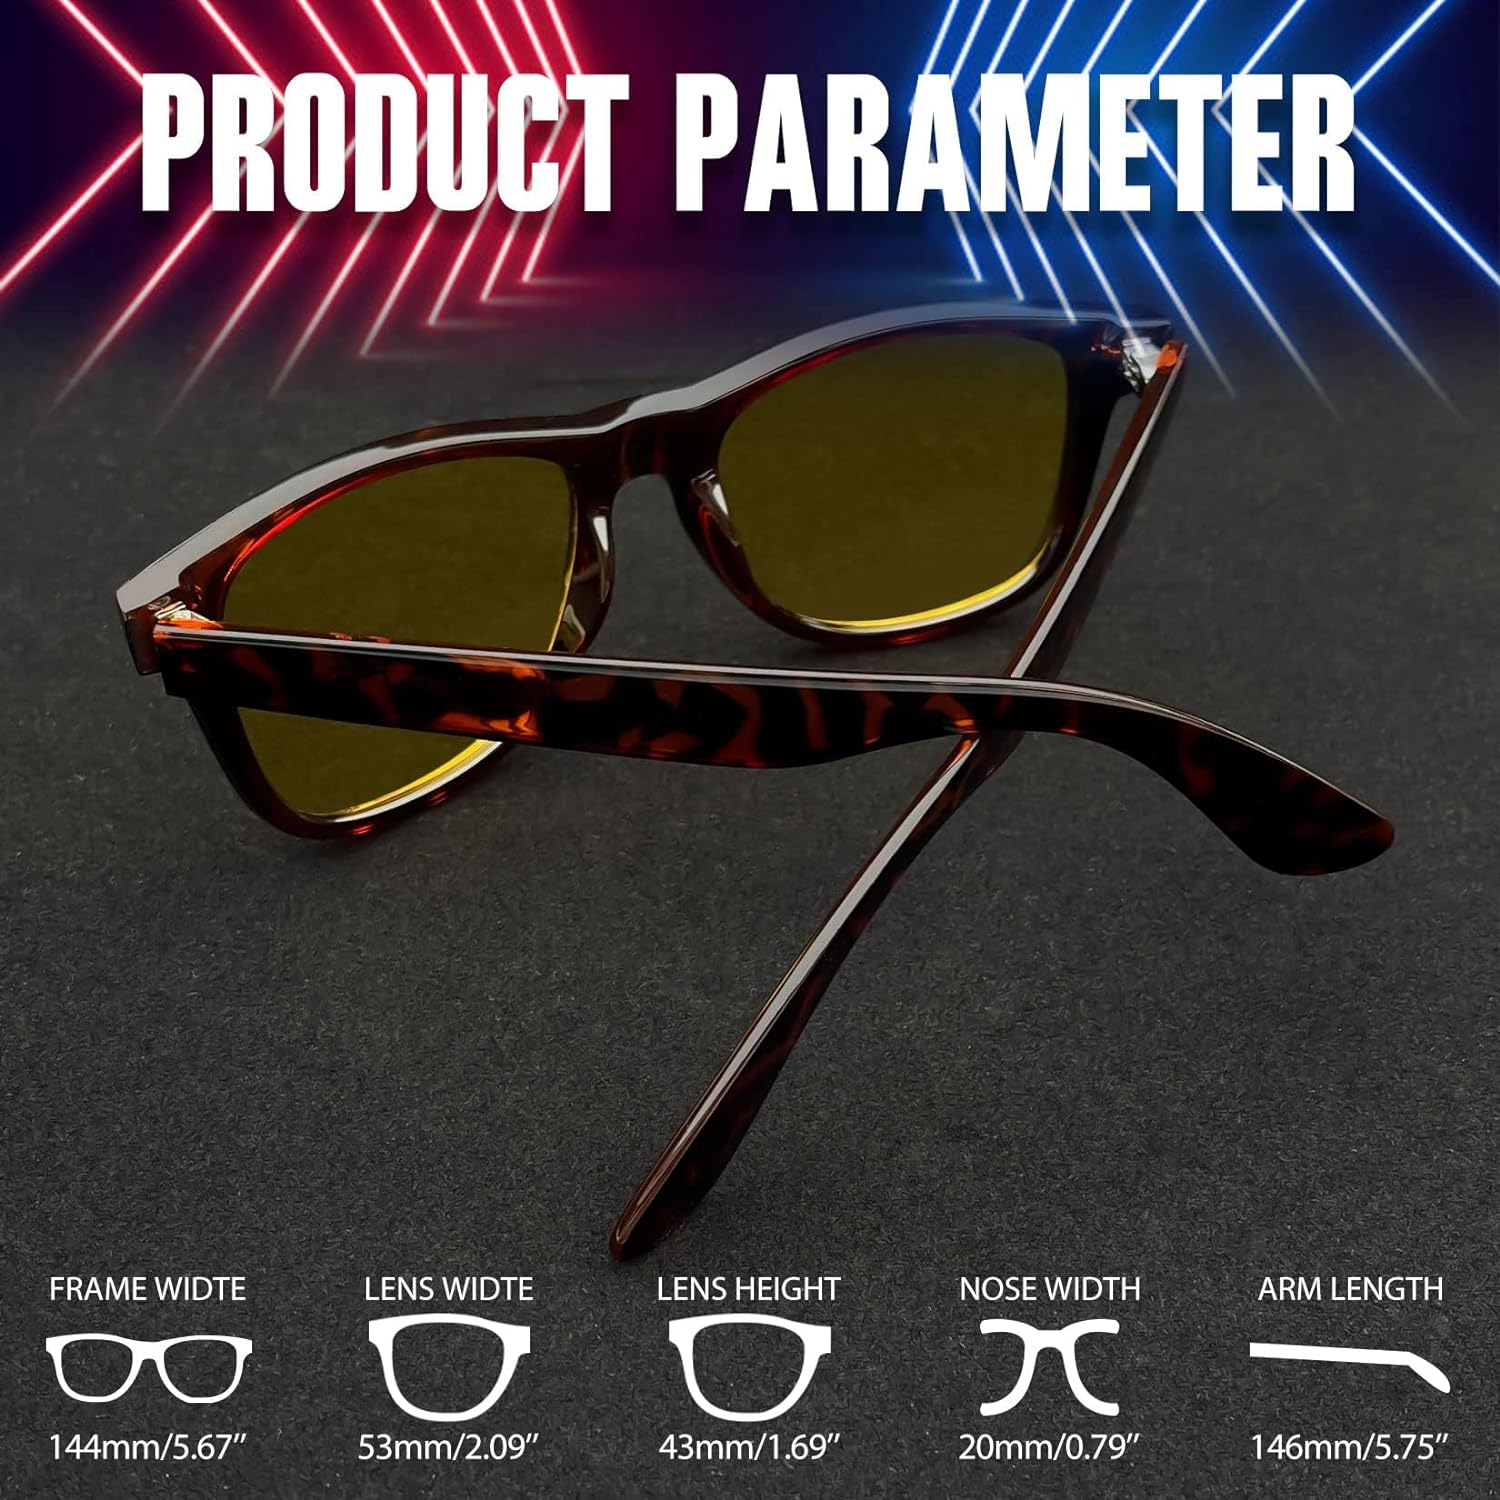 Joopin Polarized Sunglasses Men Women, Classic Square Sun Glasses 100% UV Protection Driving Fishing